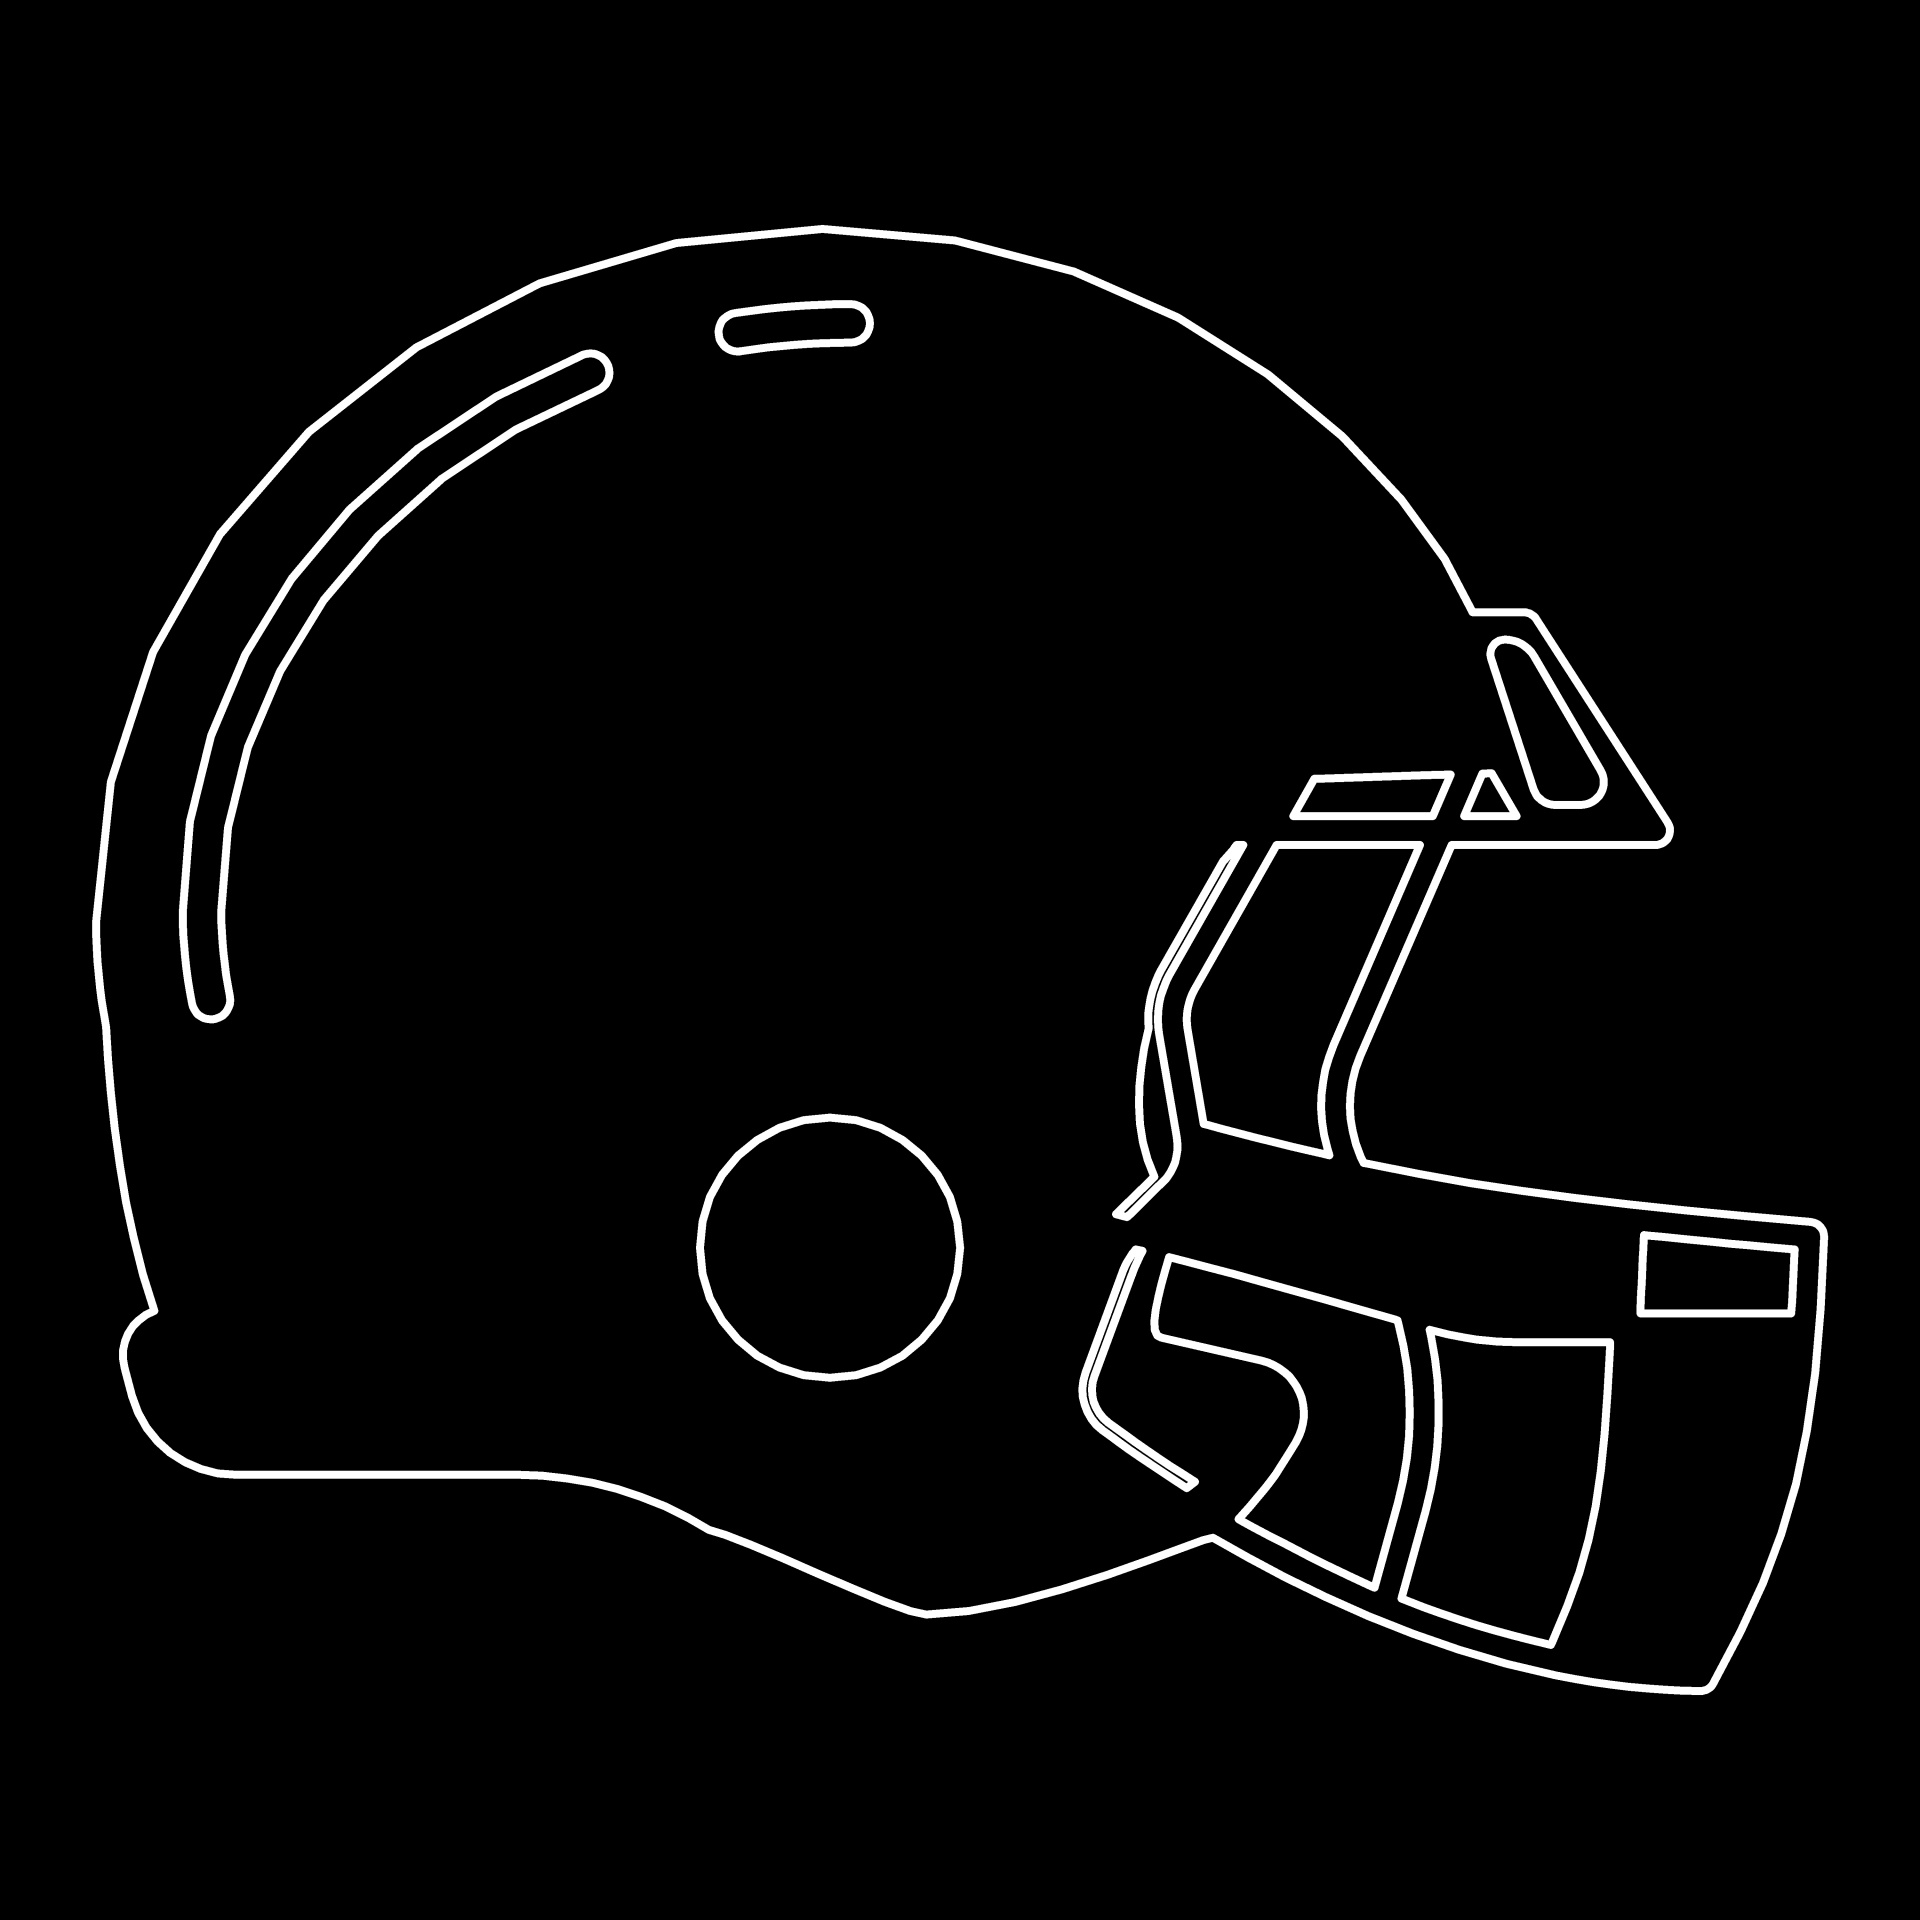 white football helmet on black background